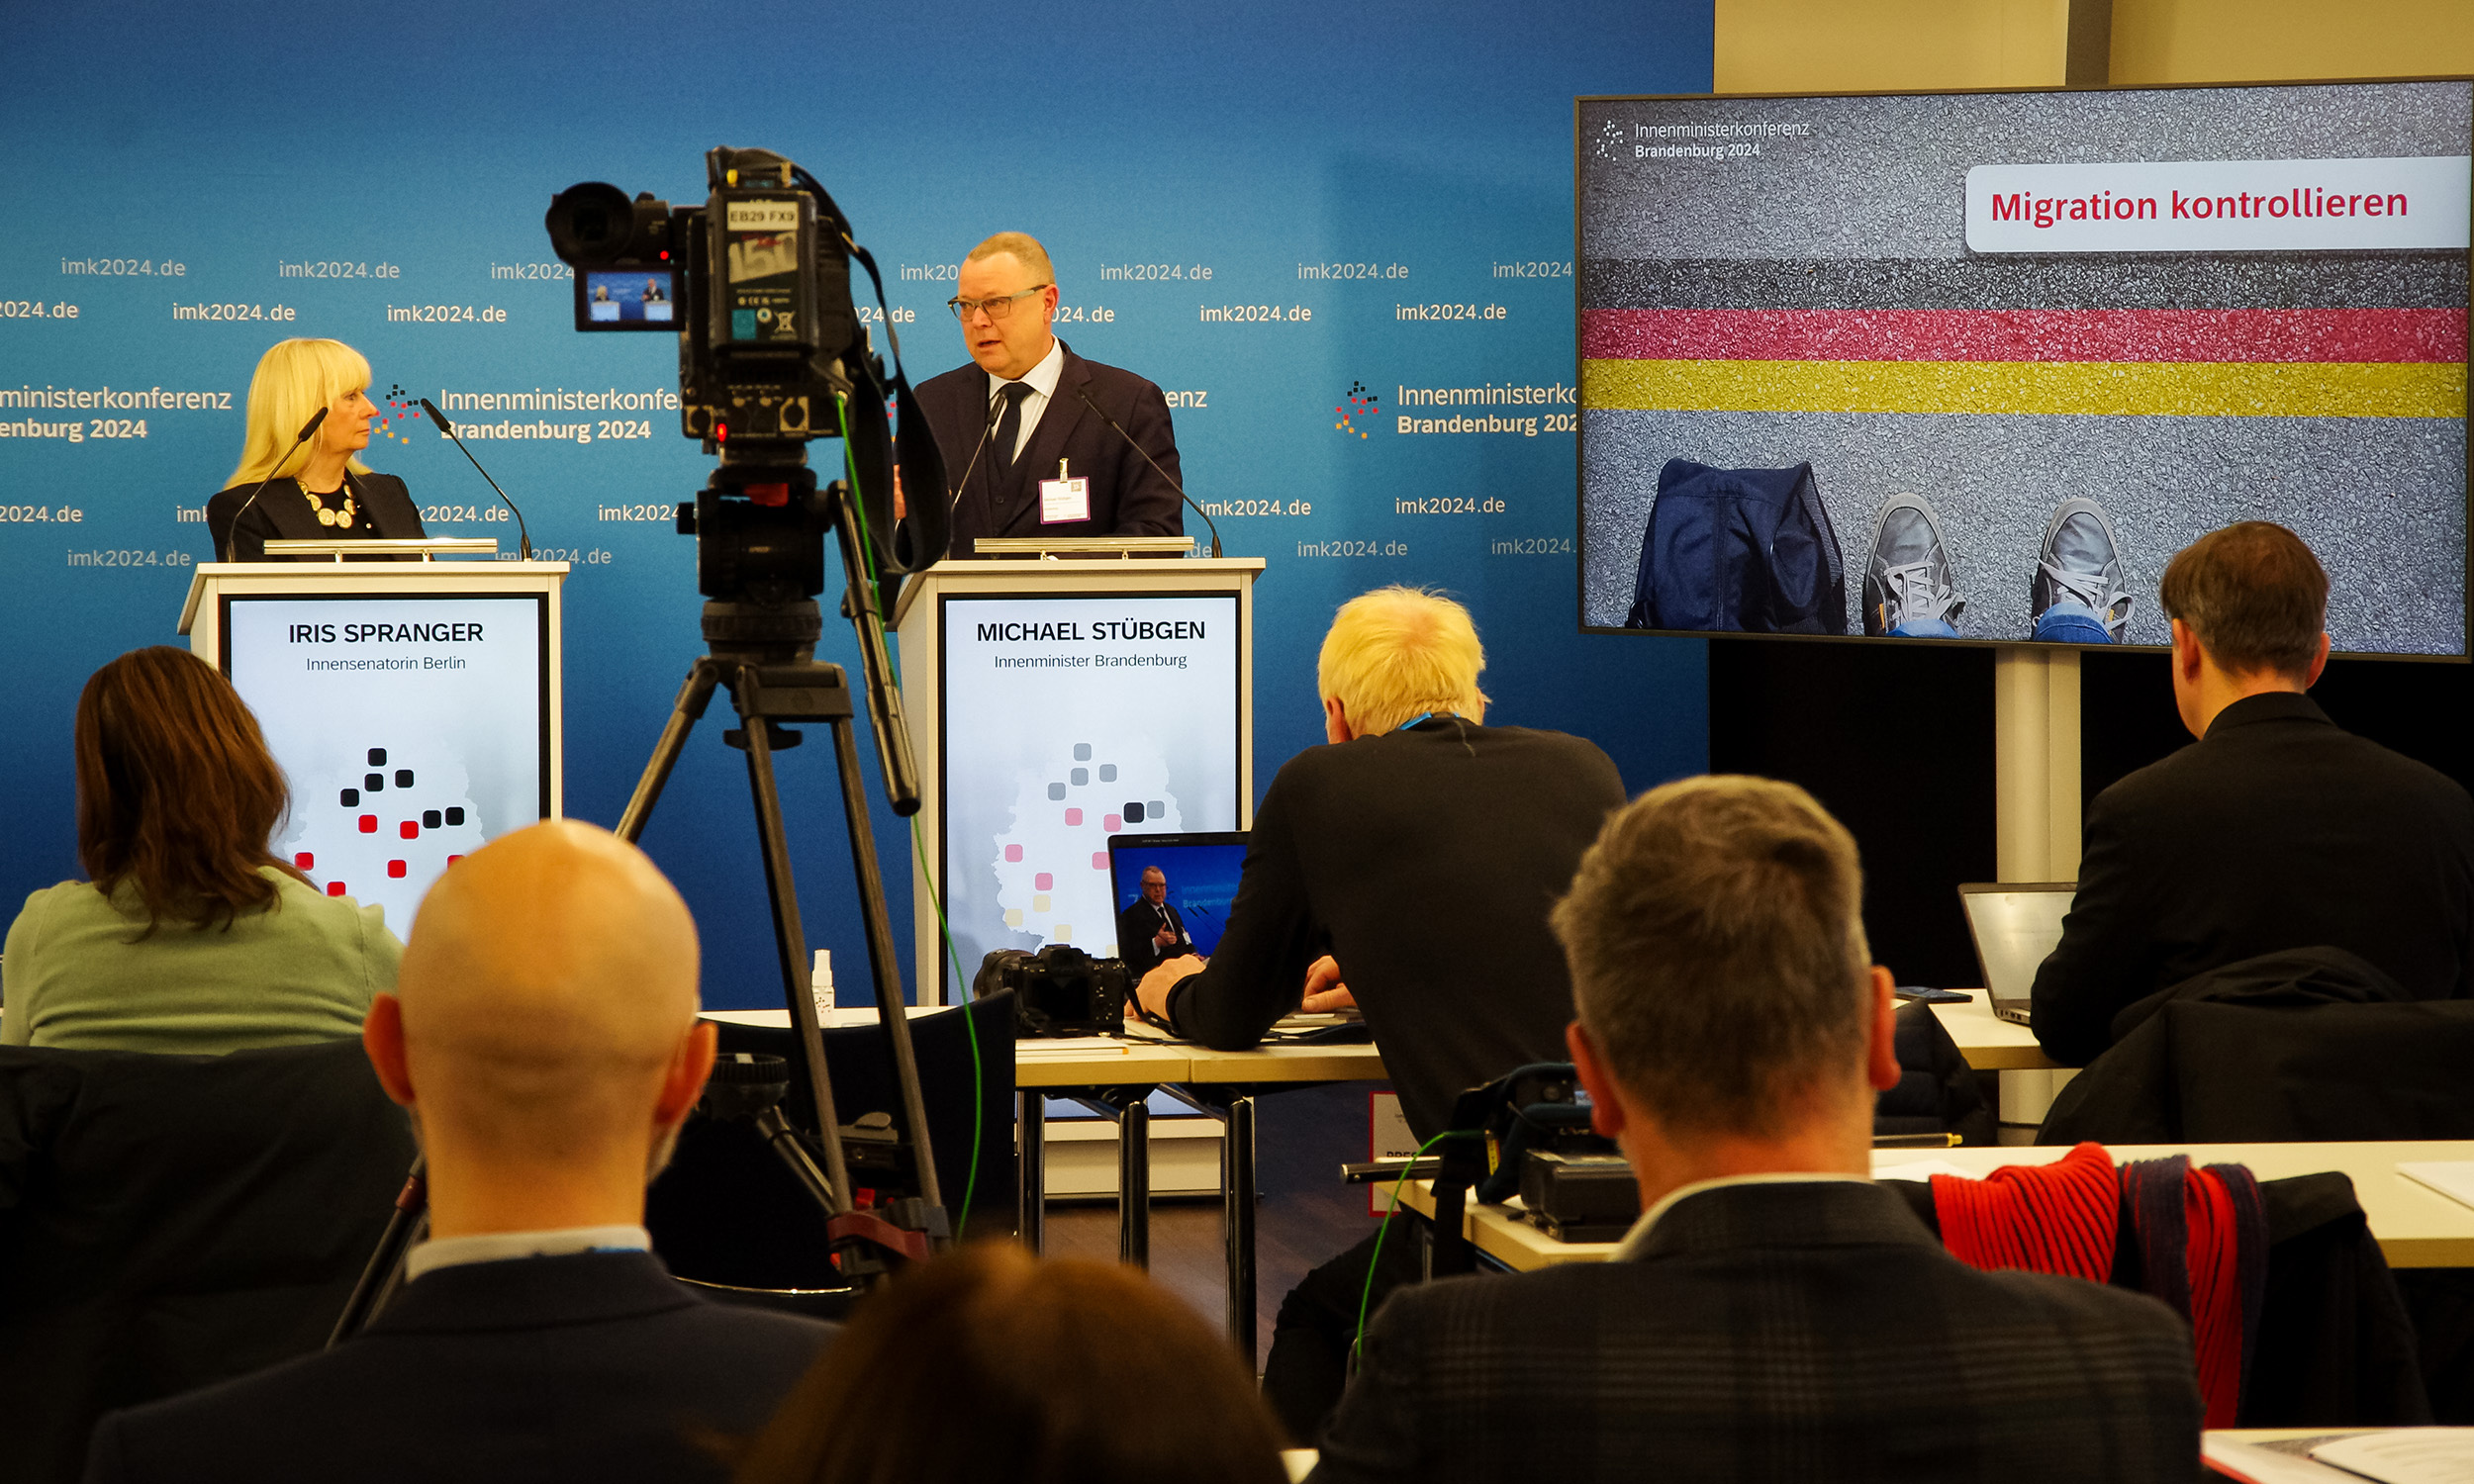 Bild: Foto von der Pressekonferenz anlässlich der IMK-Staffelstabübergabe am 12. Januar 2024 in Potsdam